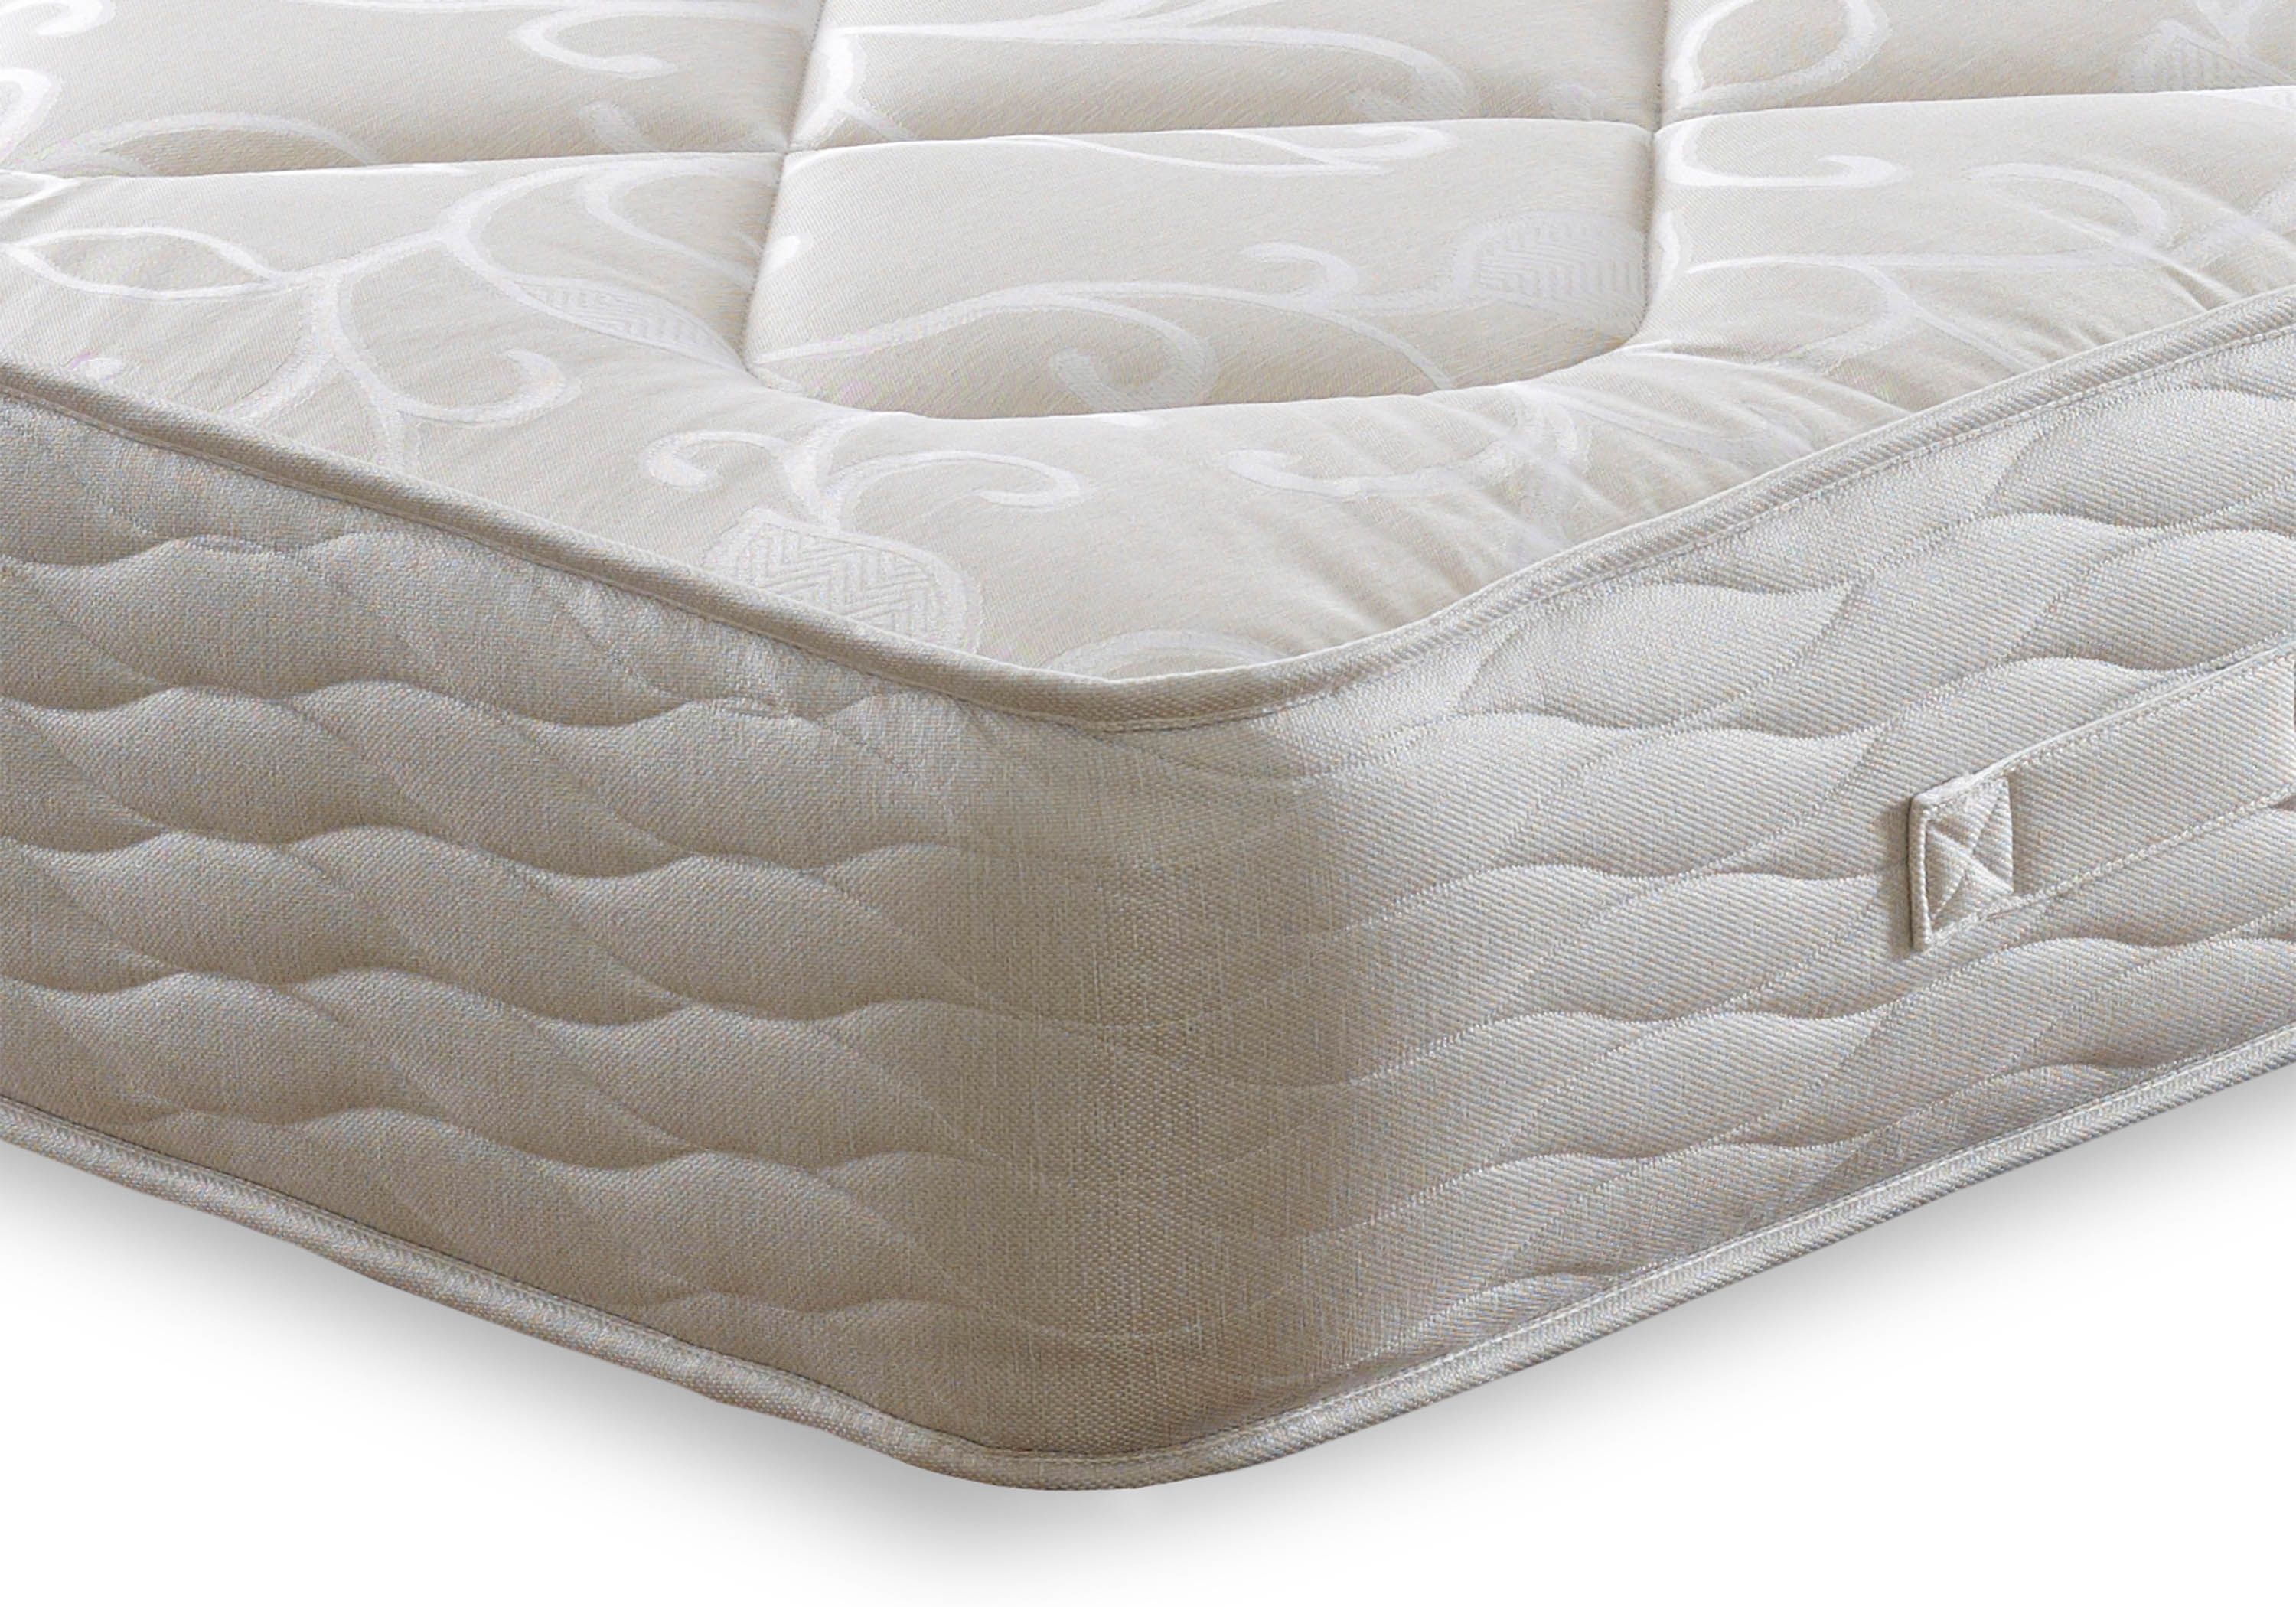 igel pegasus mattress review